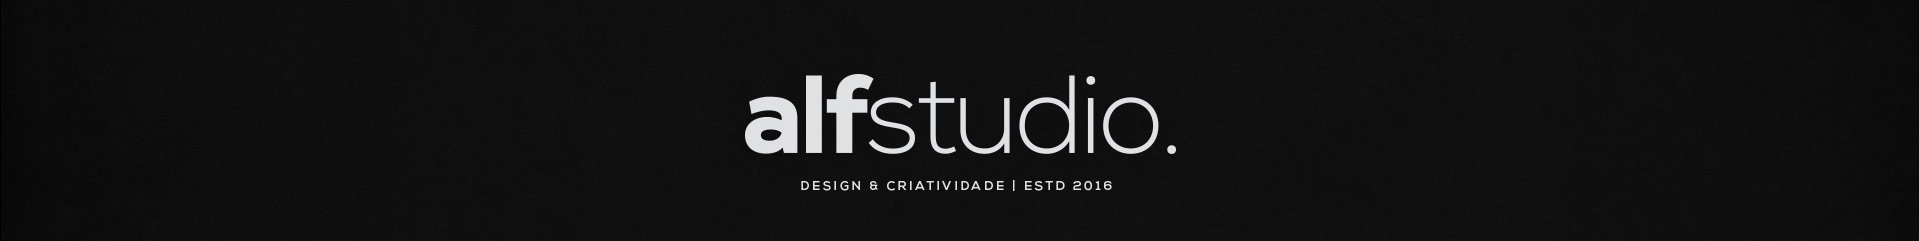 Alf Studio Designs profilbanner